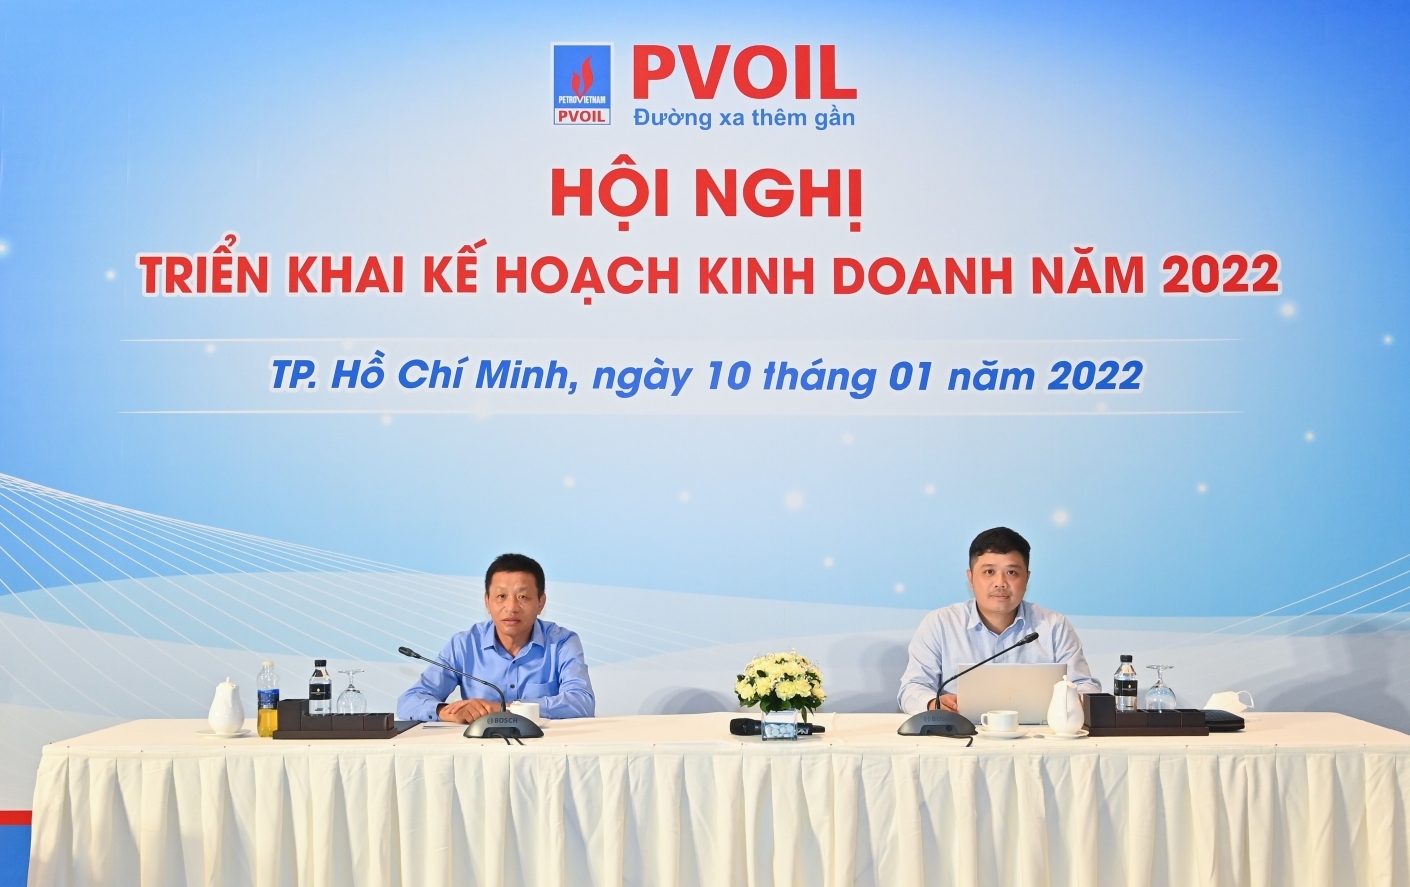 PVOIL hướng đến nhiều mục tiêu ứng dụng chuyển đổi số trong kế hoạch kinh doanh năm 2022